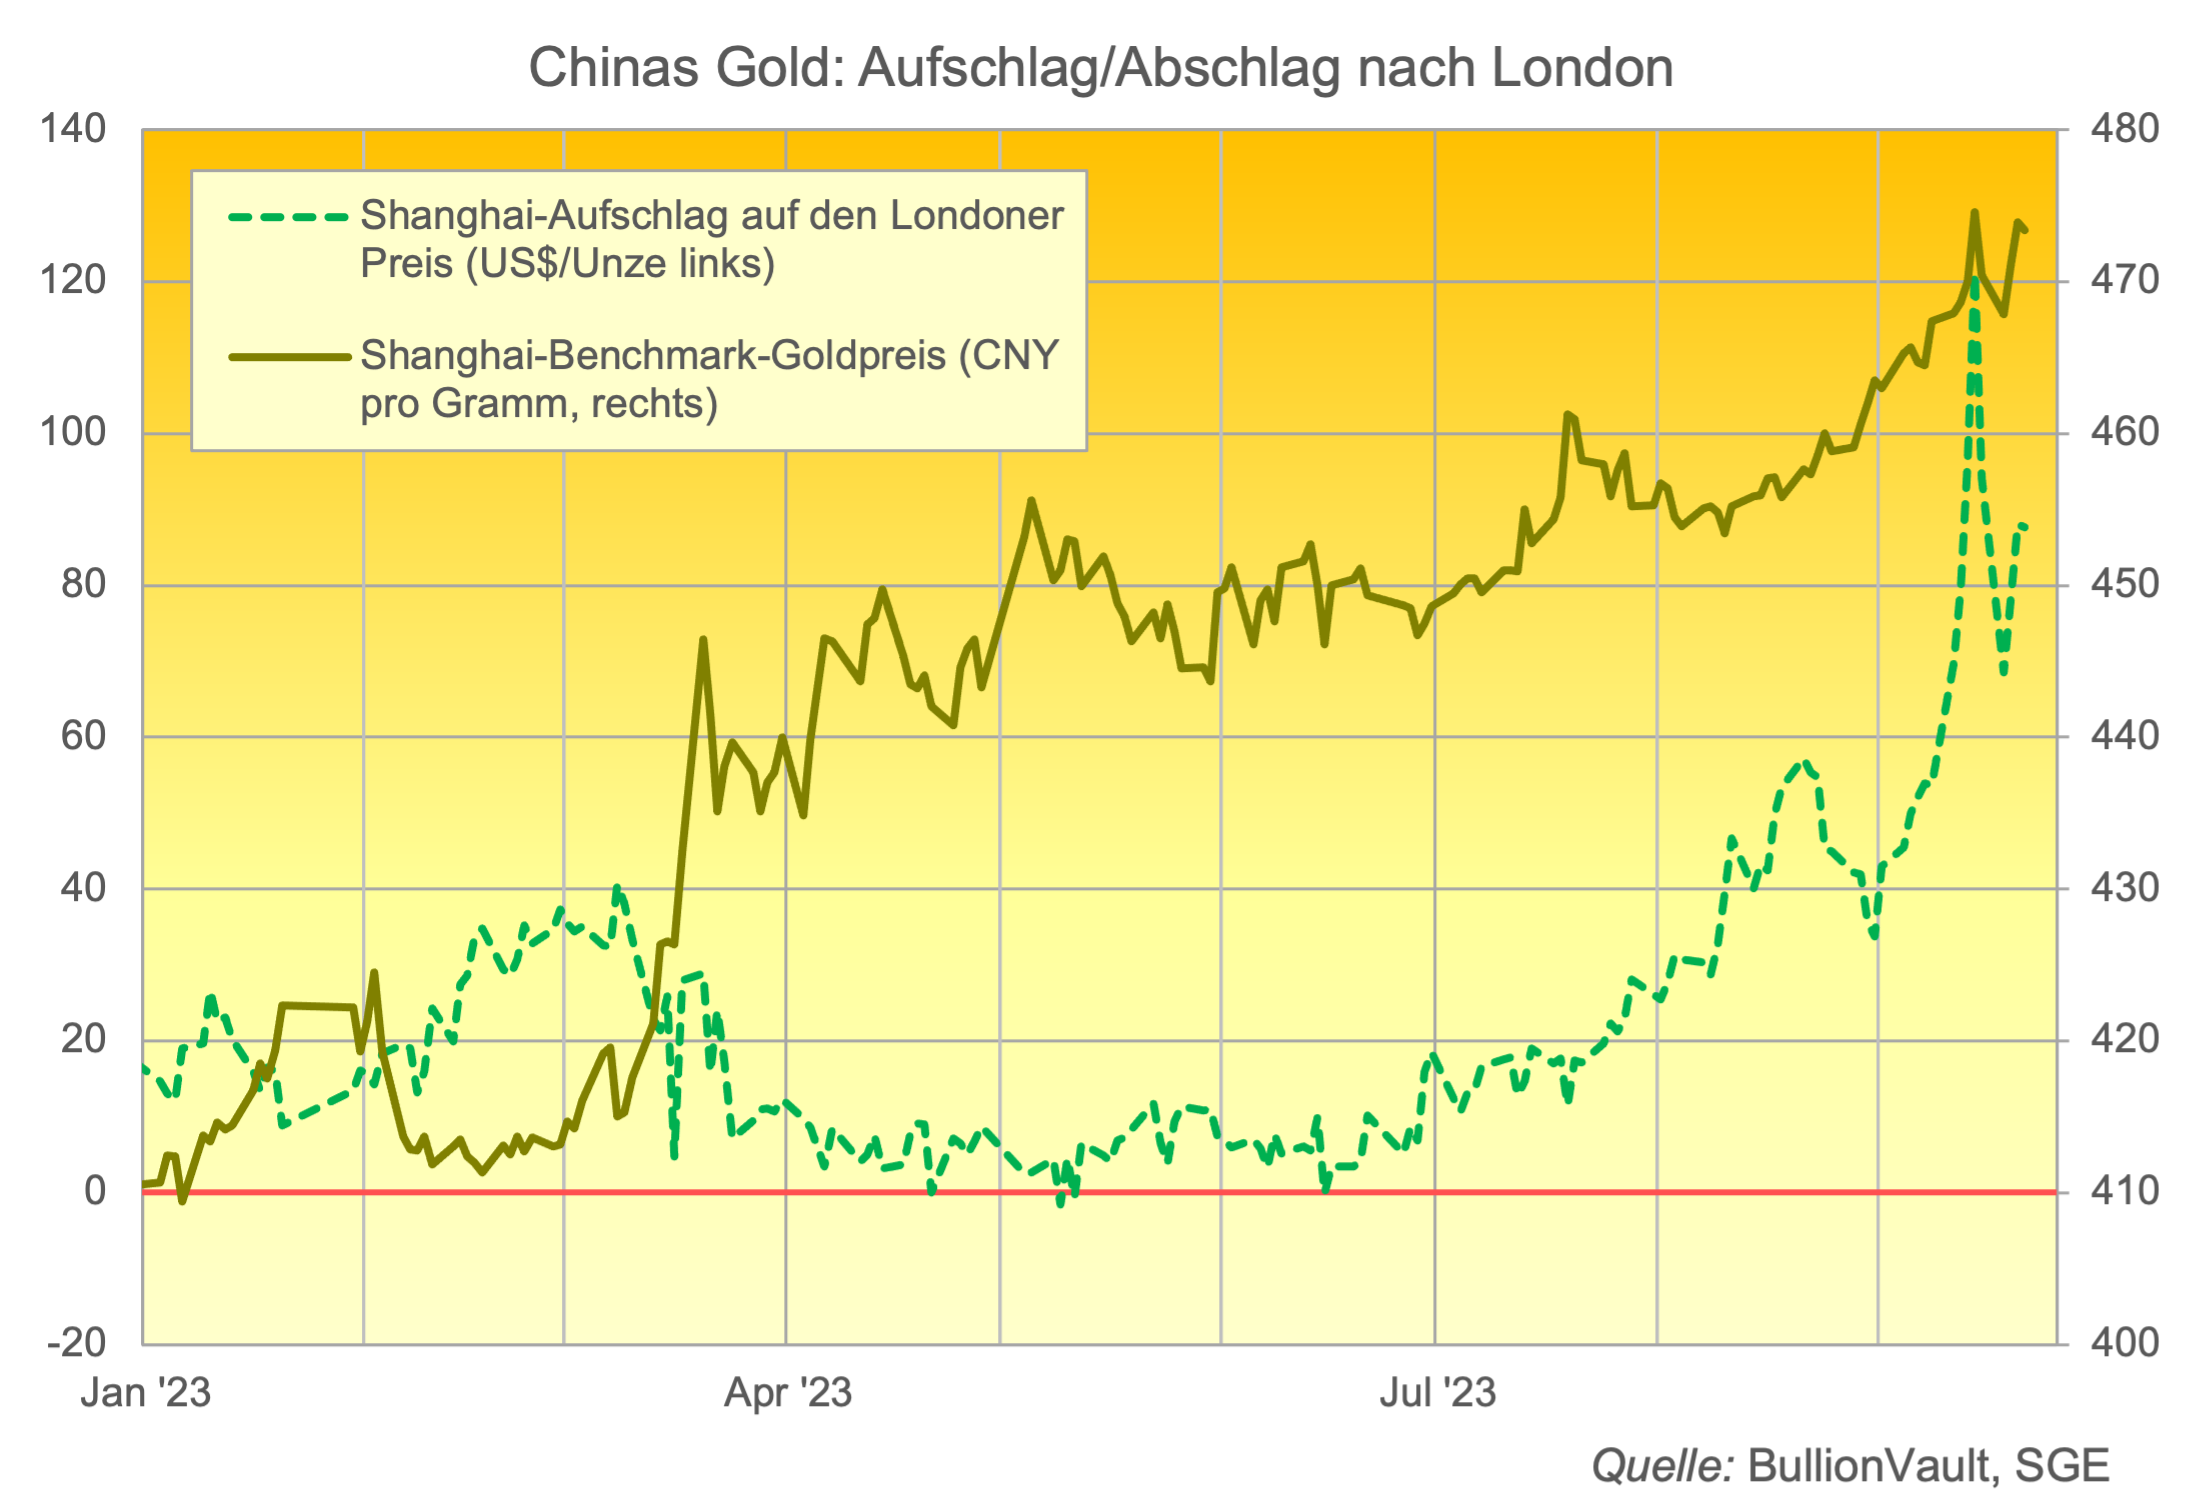 Chinas Gold: Aufschlag/Abschlag zu London Quelle: BullionVault, SGE